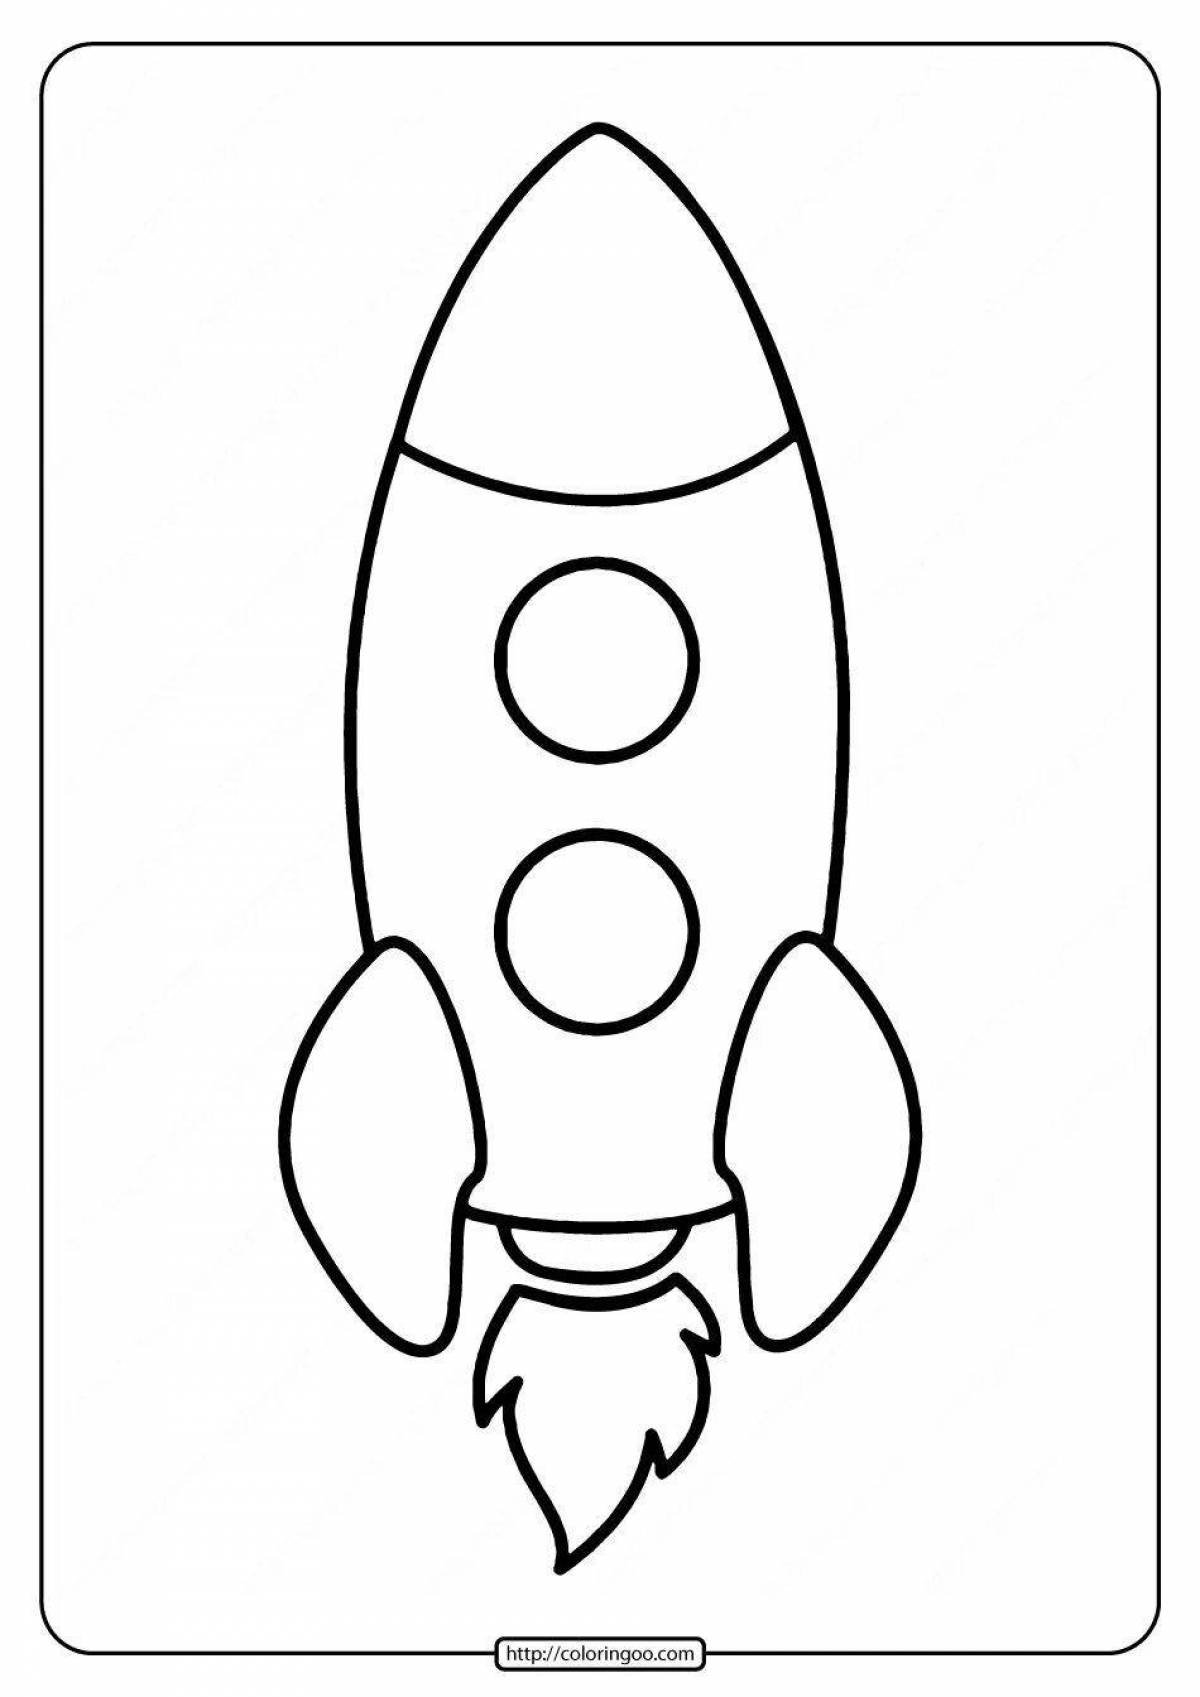 Ракета раскраска. Ракета раскраска для малышей. Раскраска ракета в космосе для детей. Ракета трафарет для детей. Шаблон ракеты для аппликации ко дню космонавтики